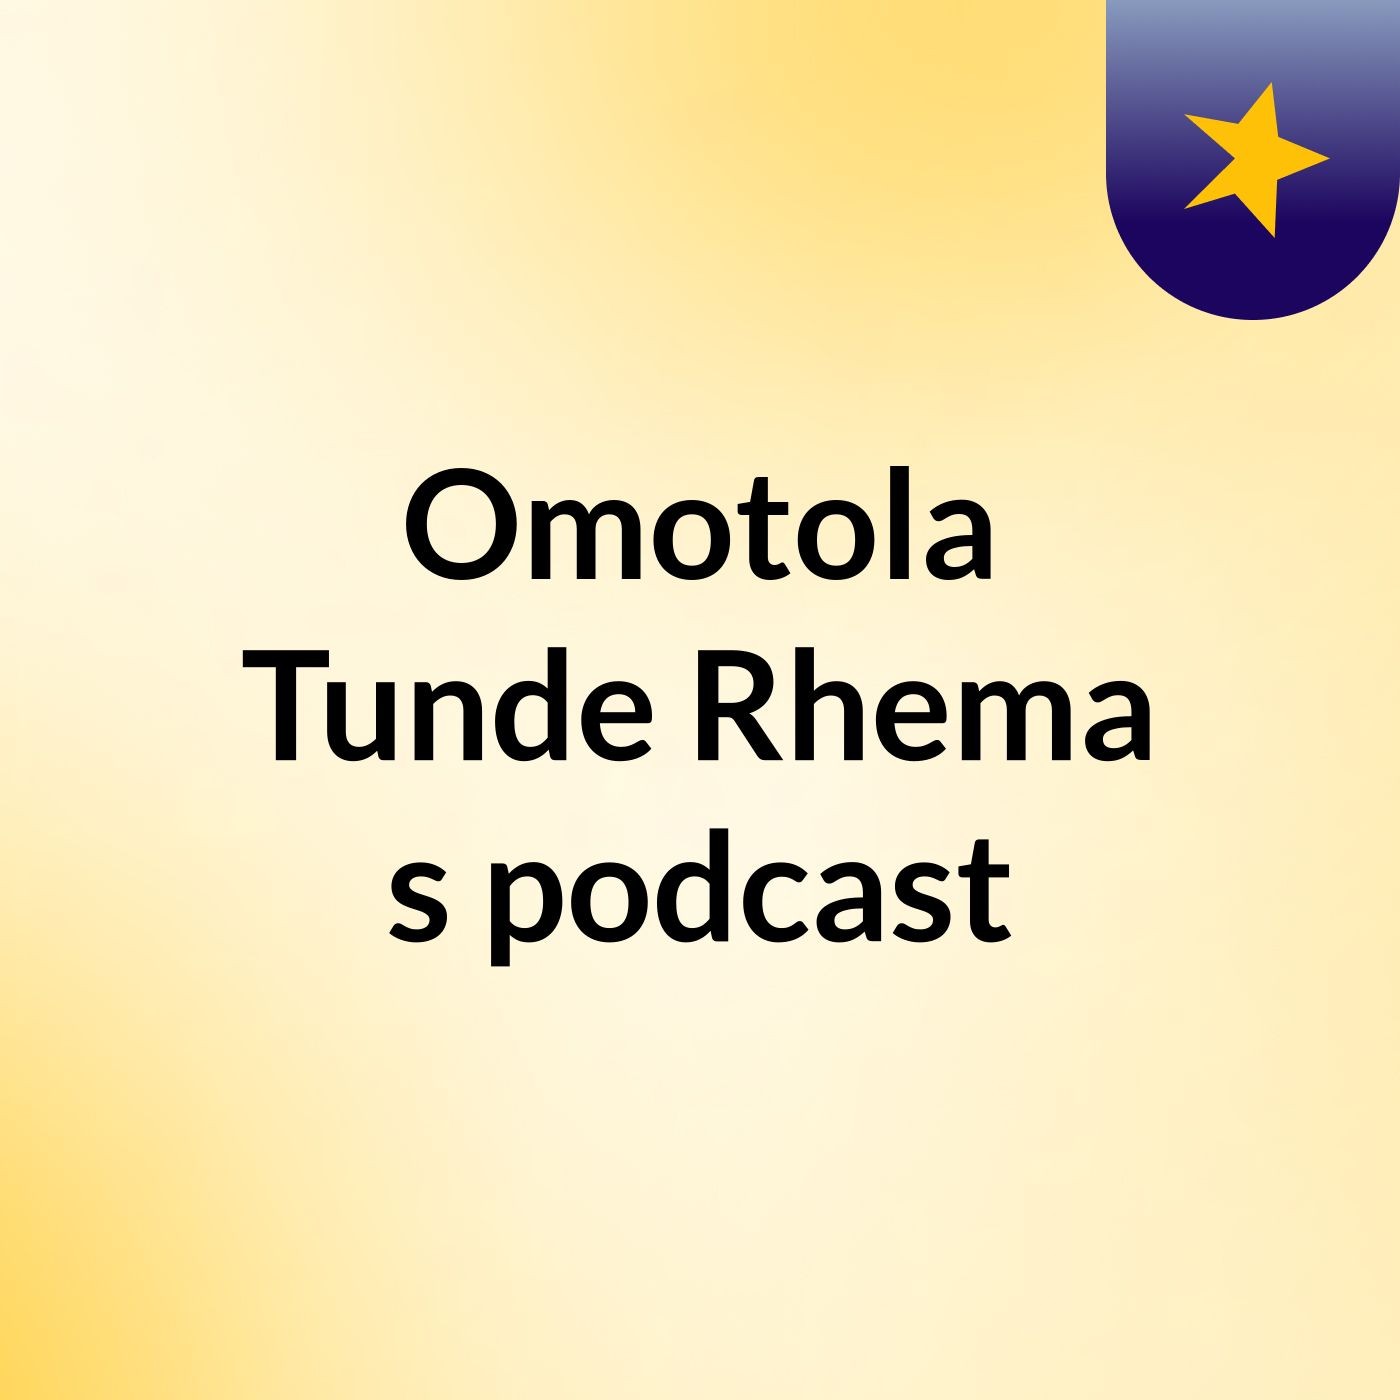 Omotola Tunde Rhema's podcast